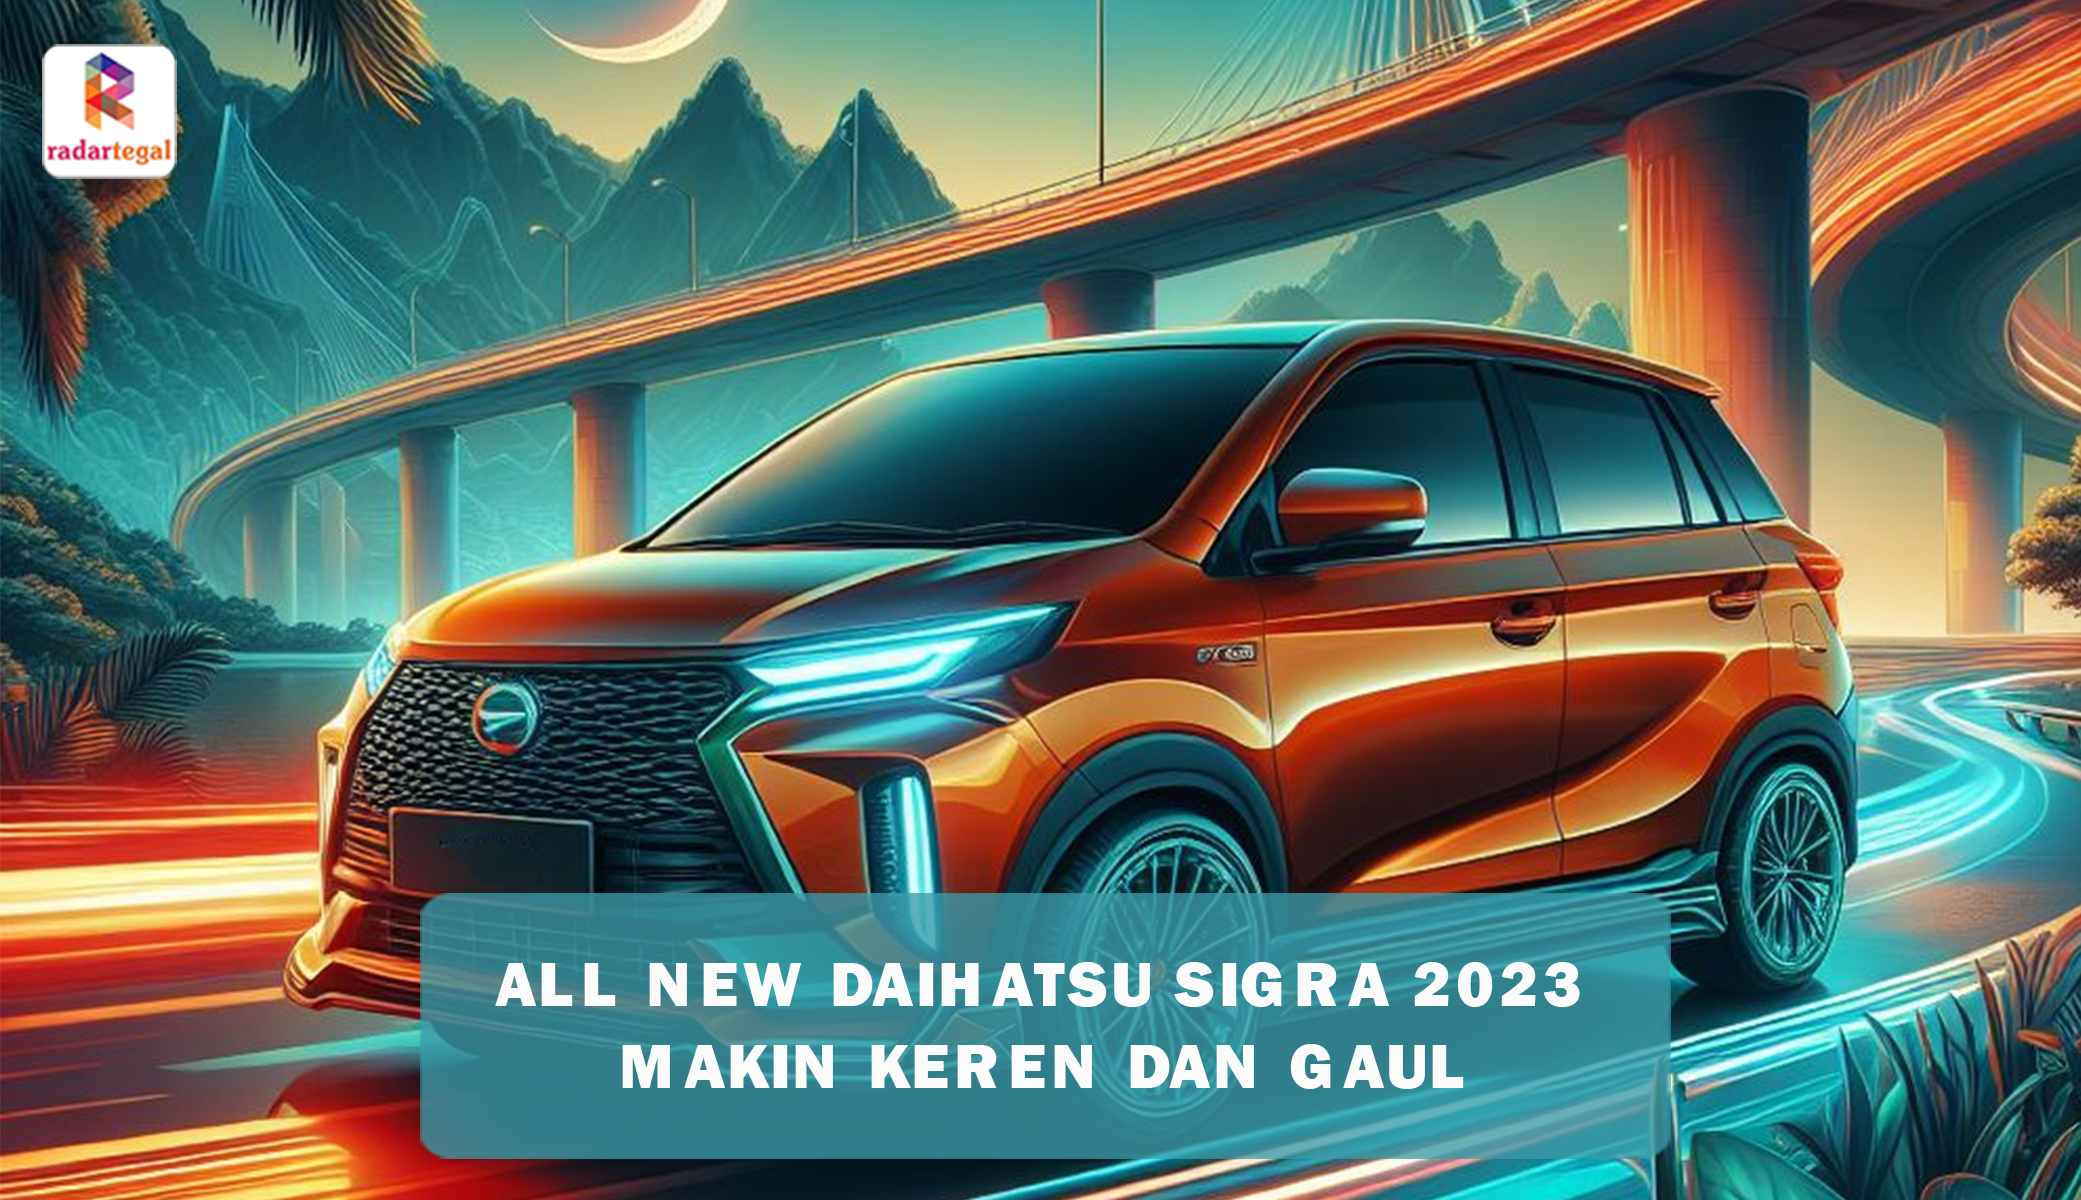 All New Daihatsu Sigra 2023 Siap Mengaspal dengan Tampilan Baru yang Makin Gaul, Tersedia Dalam 10 Varian